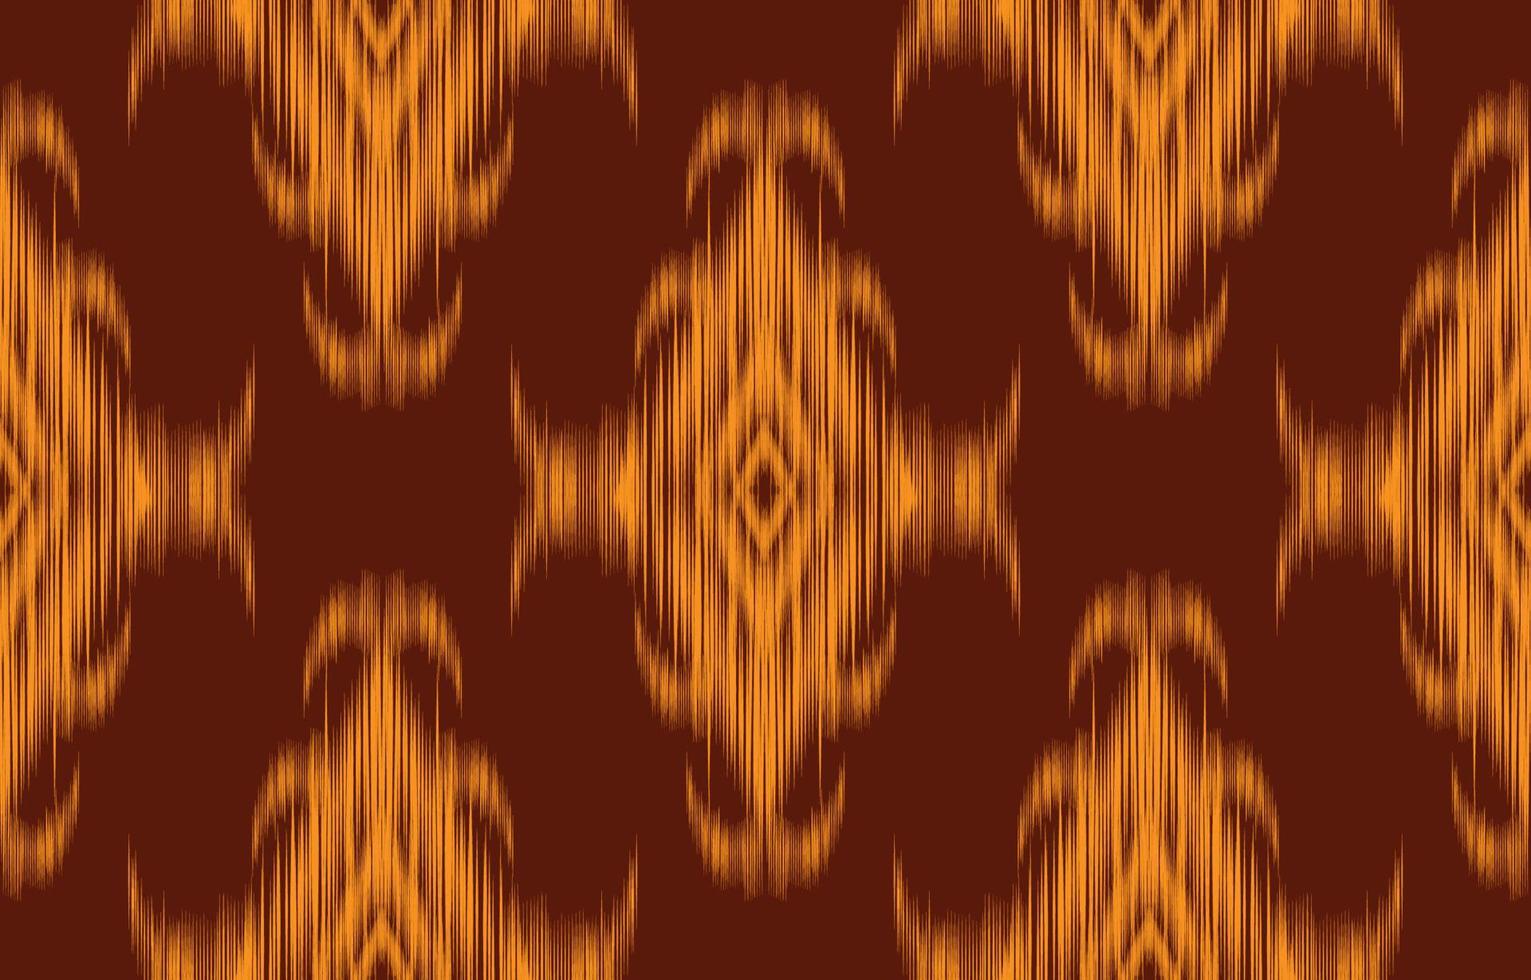 gele ikat naadloze patroon geometrische etnische Oosterse traditionele borduurwerk style.design voor achtergrond,tapijt,mat,behang,kleding,inwikkeling,batik,stof,vectorillustratie. vector